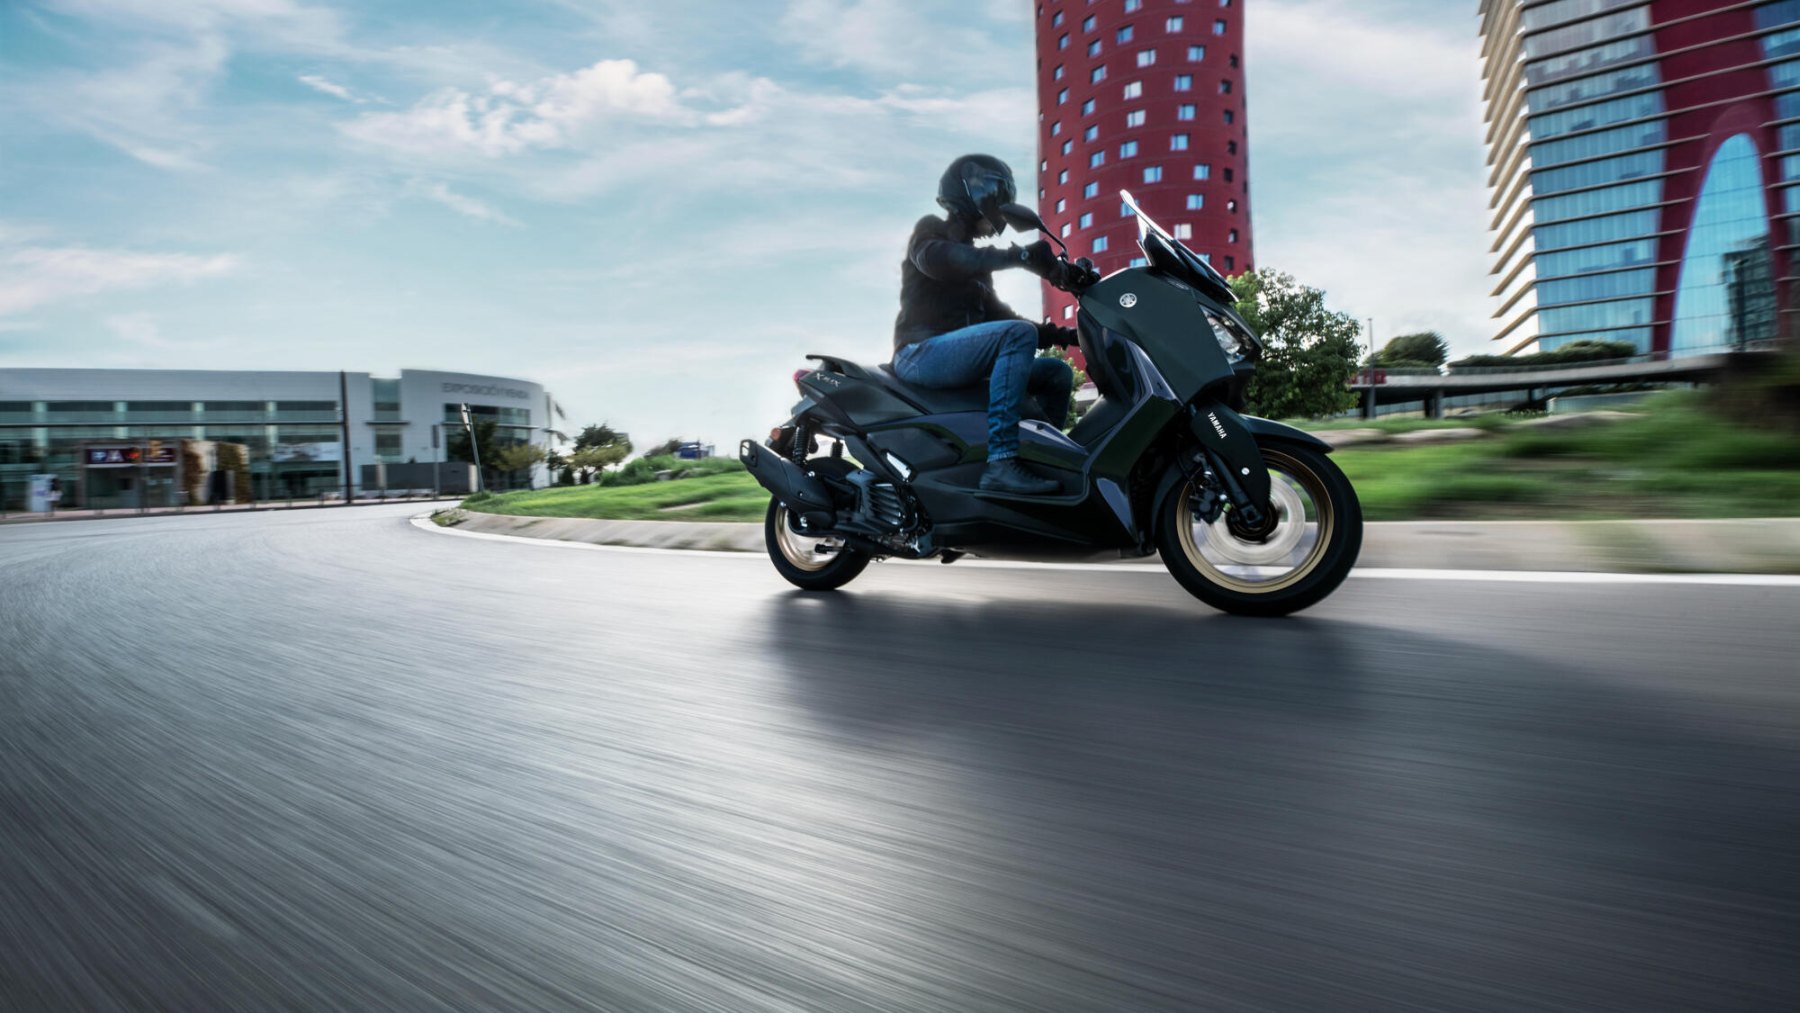 Vista dinámica lateral de la Yamaha X-Max 125cc en movimiento, destacando su agilidad.